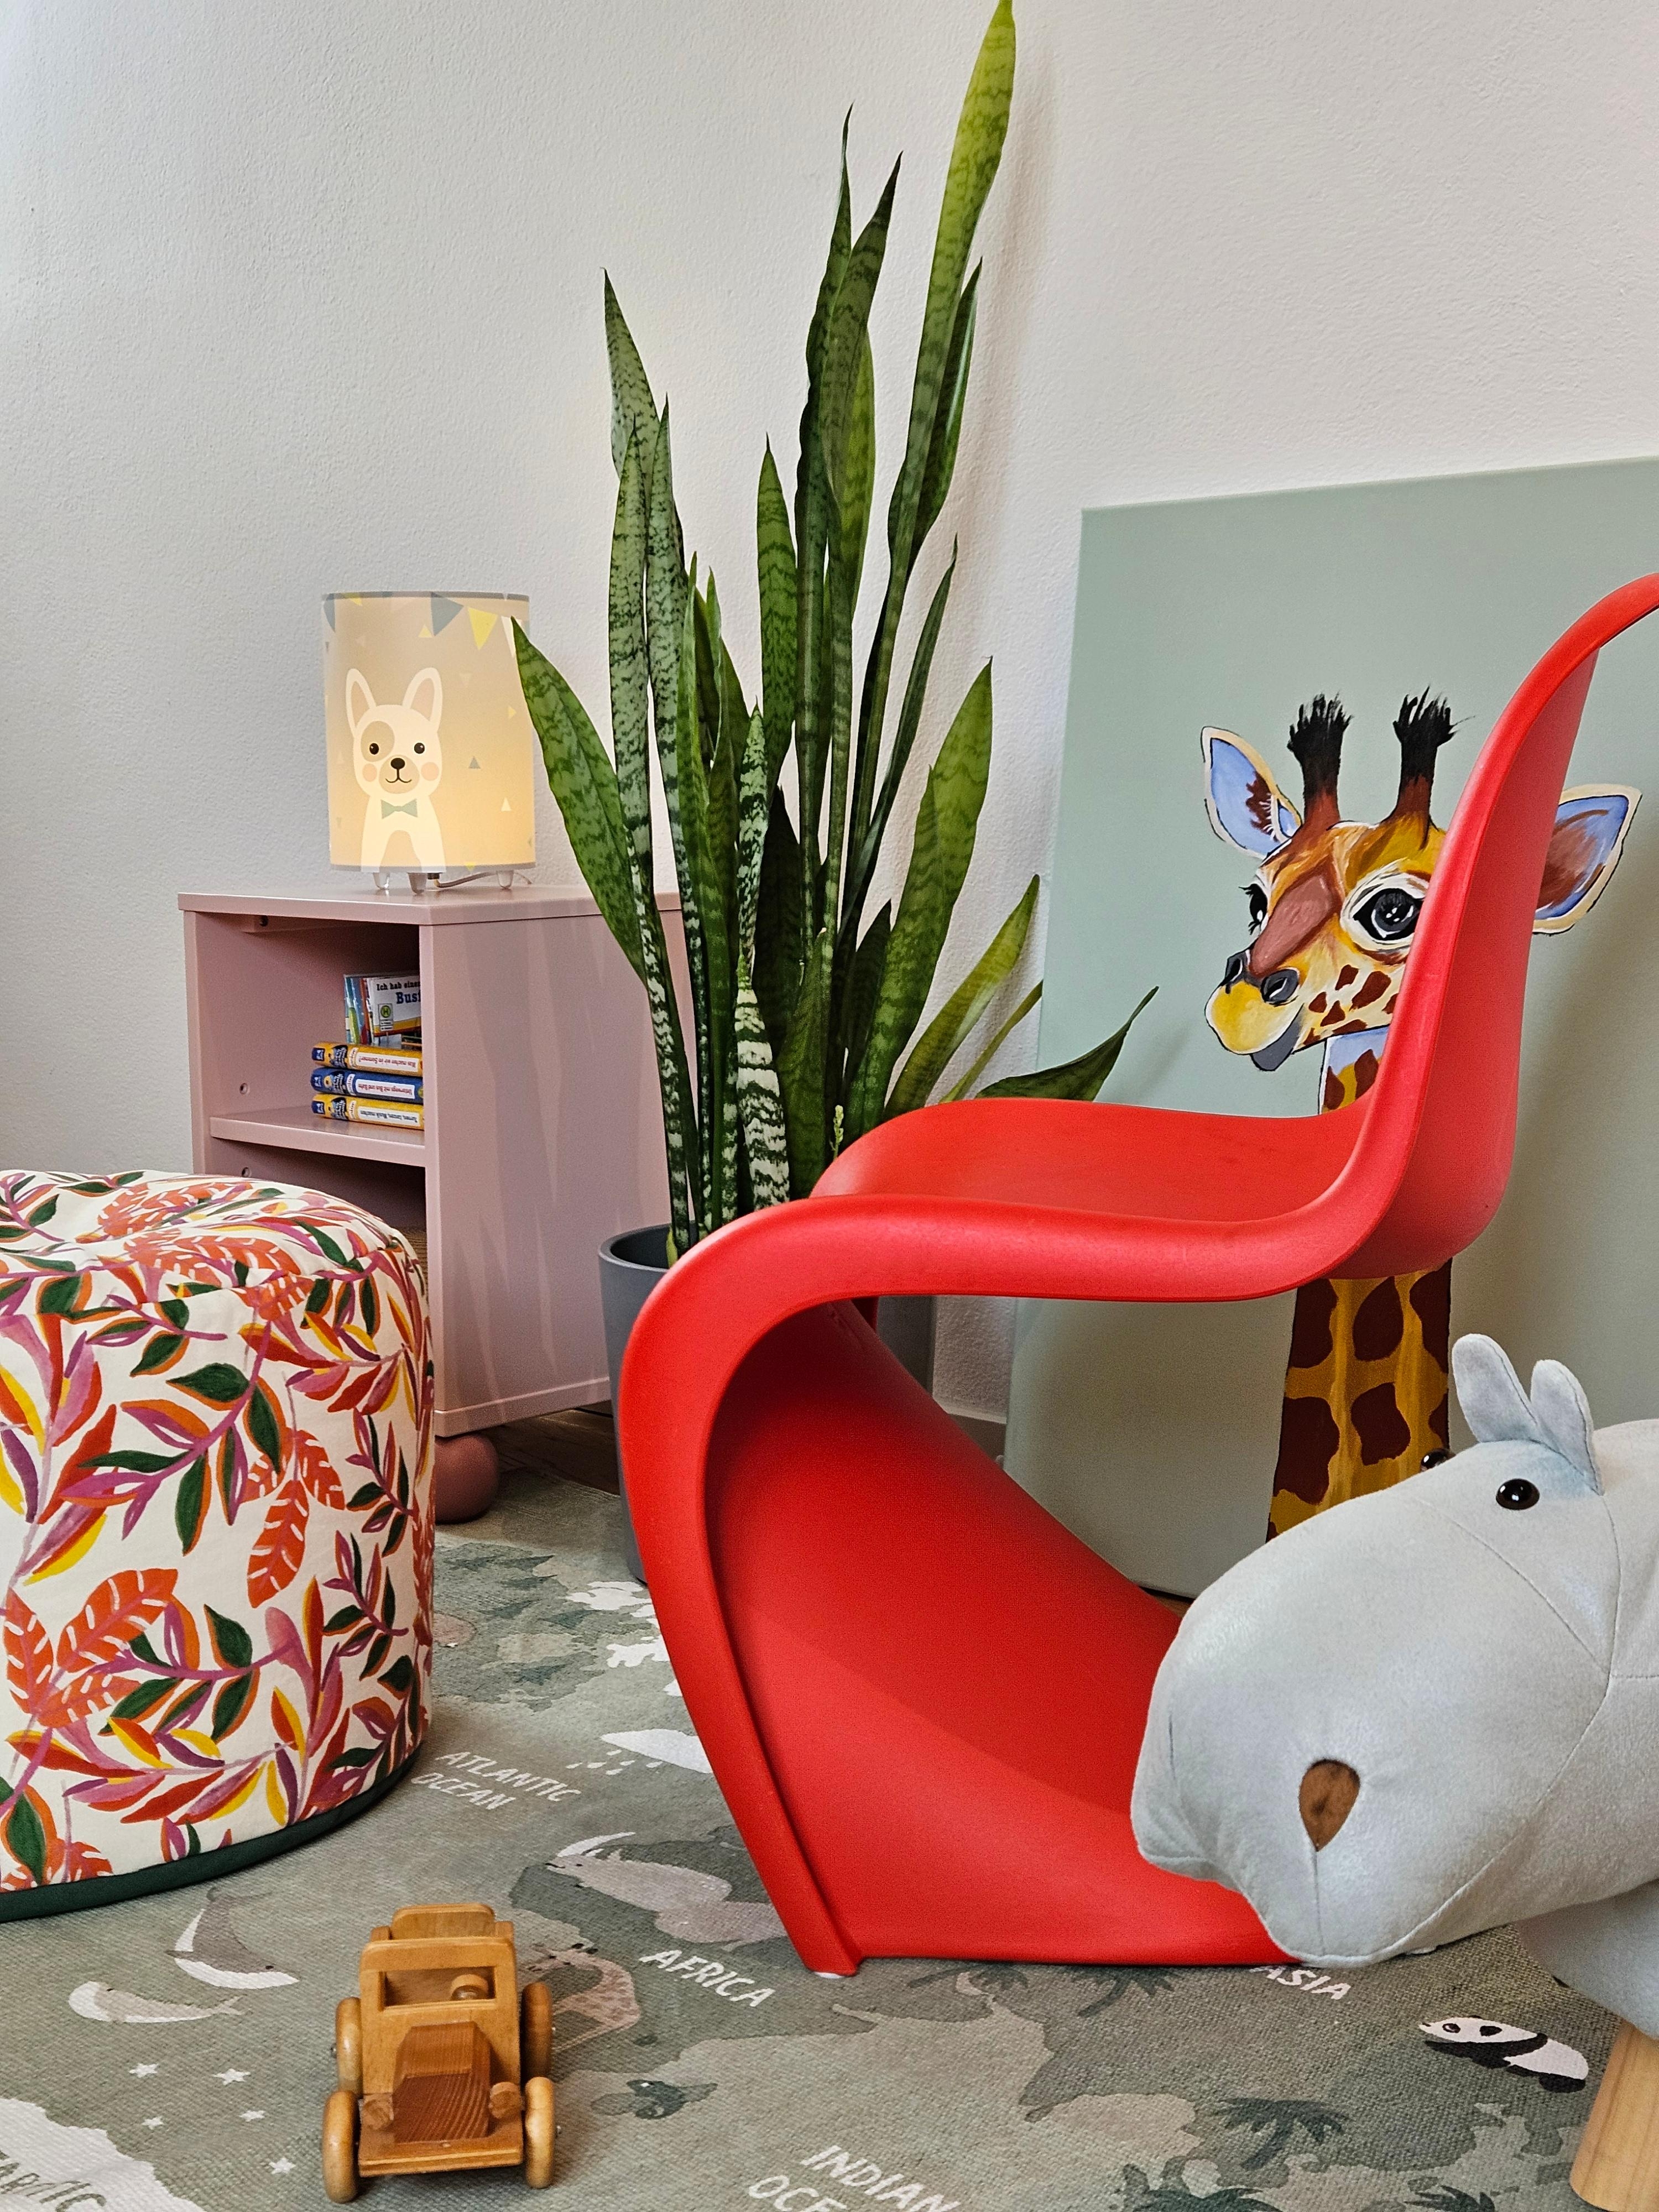 Die Kinderzimmerumplanung hat begonnen 😉 #Kinderzimmer #Stuhl #farbenfroh #Projekt 